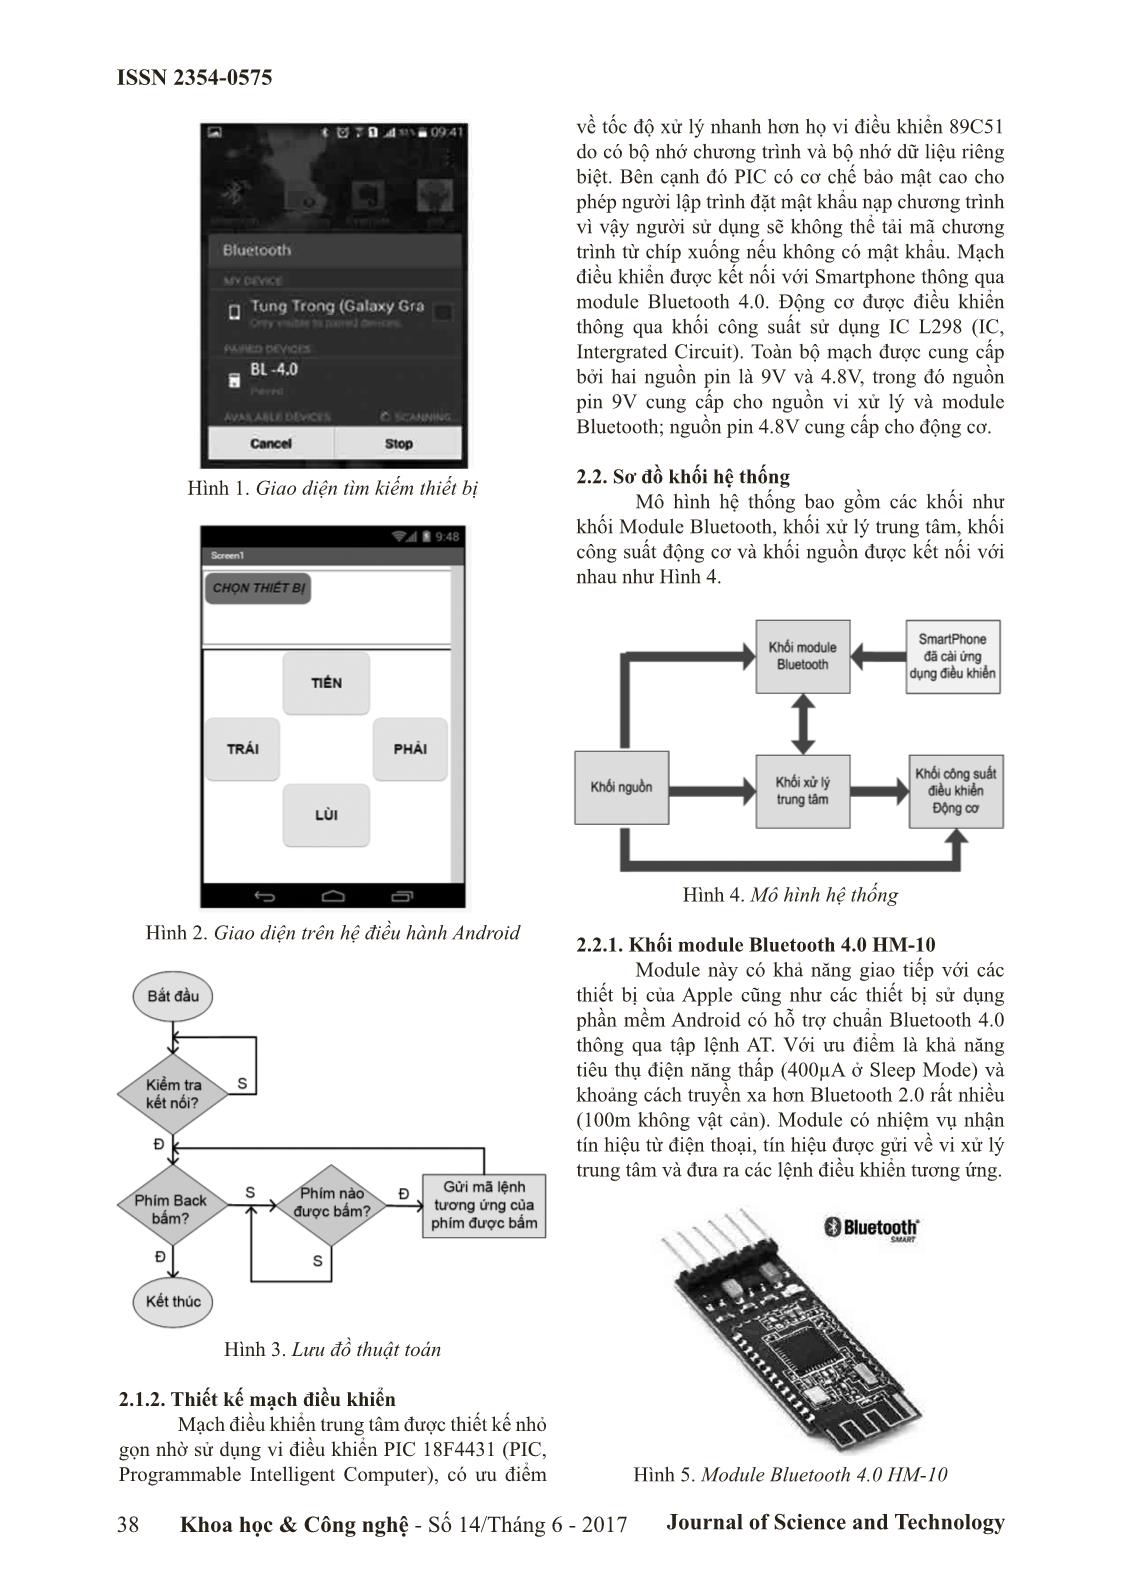 Điều khiển thiết bị từ xa bằng Smartphone dựa trên sóng Bluetooth trang 2